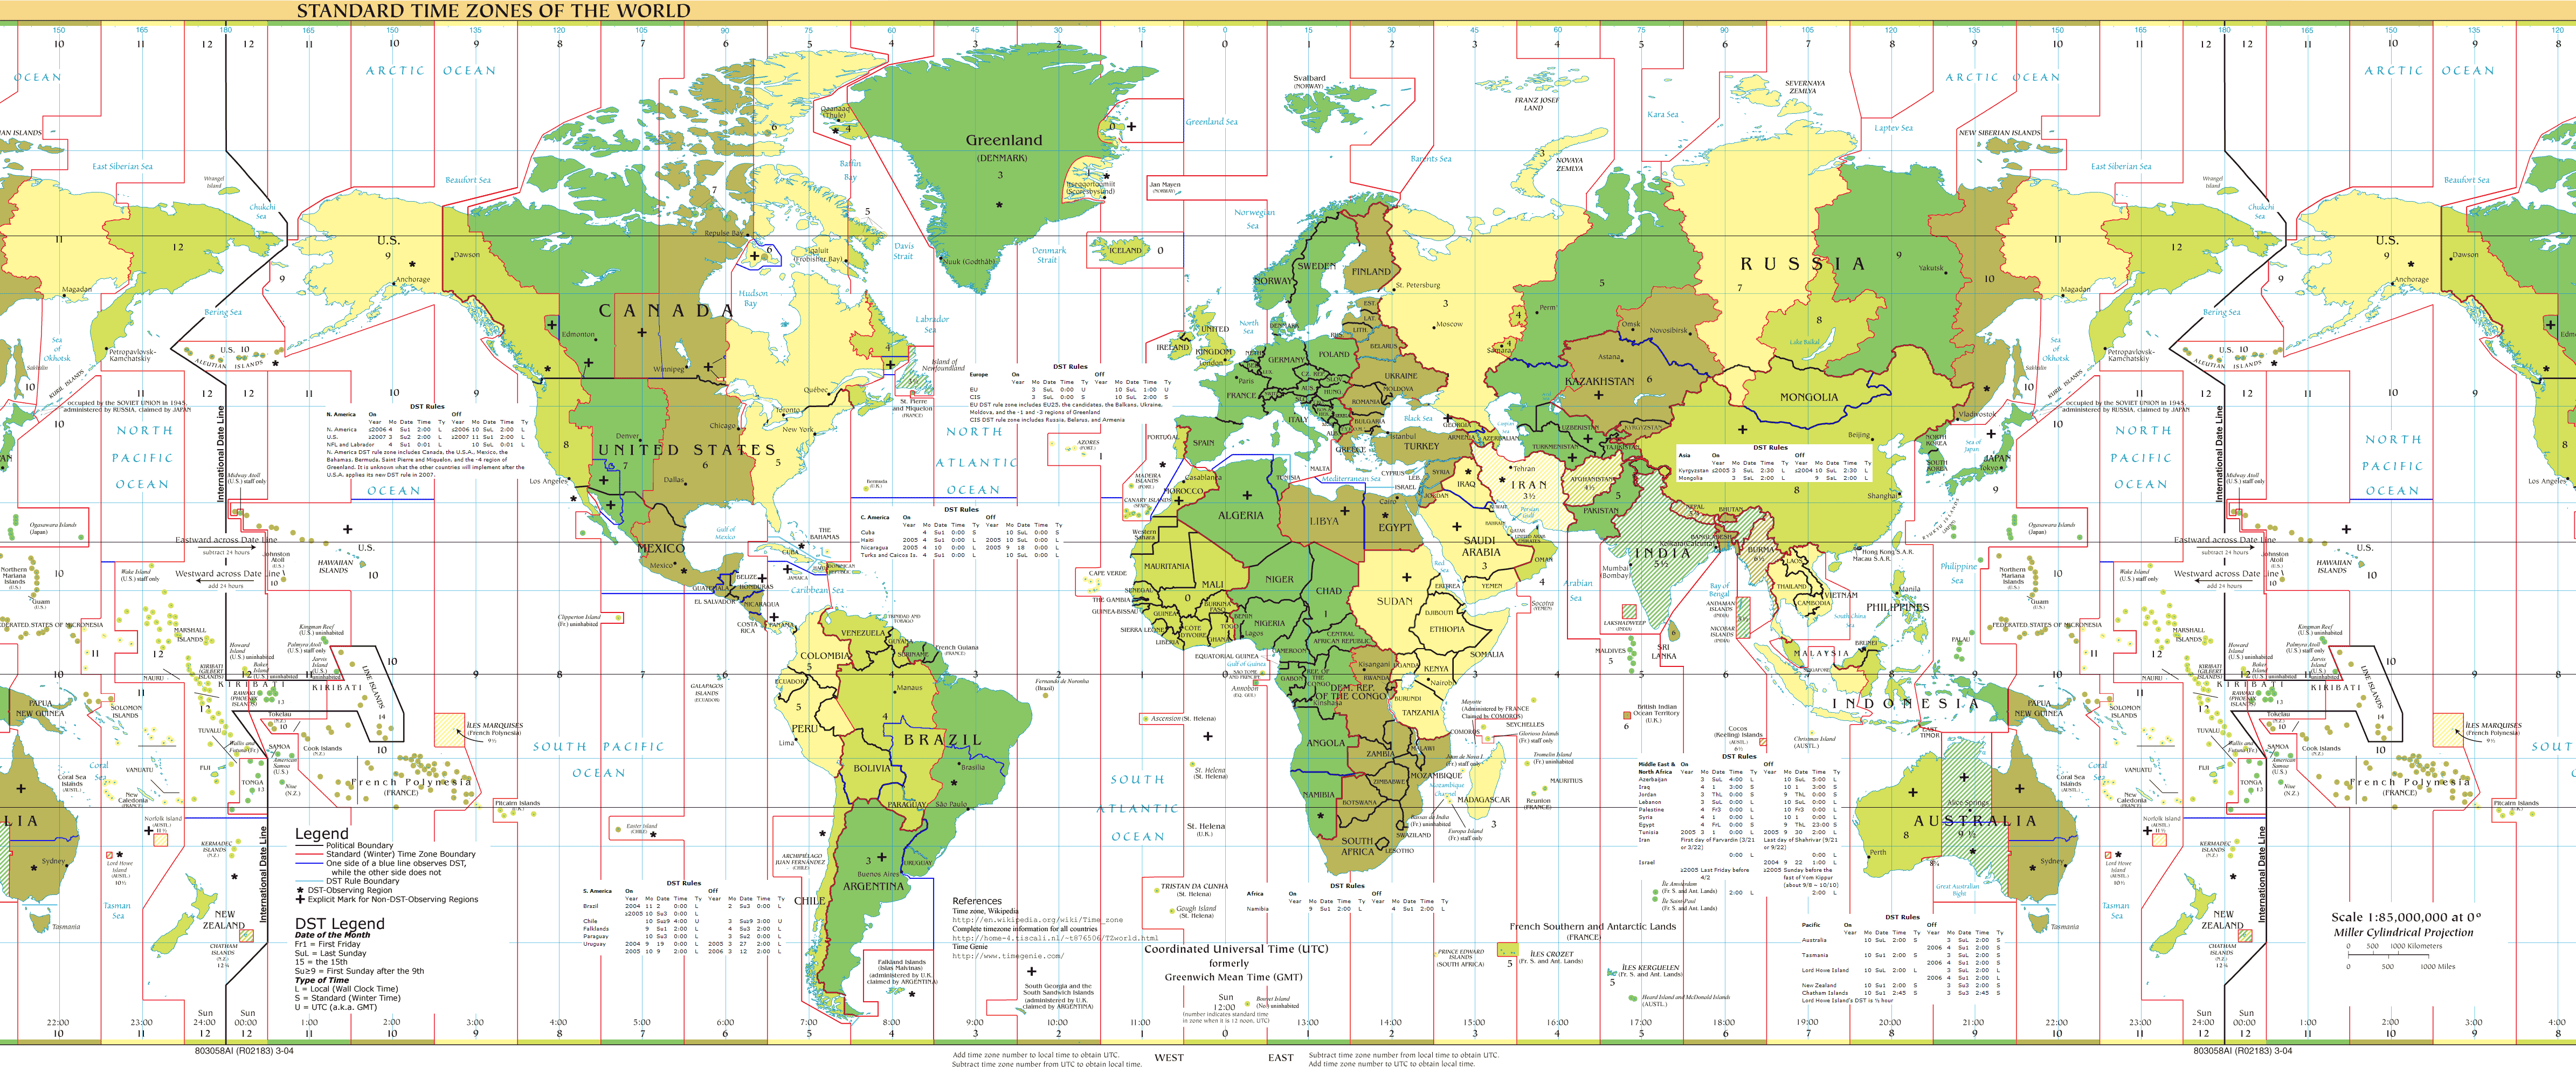 Dünya Standard Zaman Dilimleri Haritası